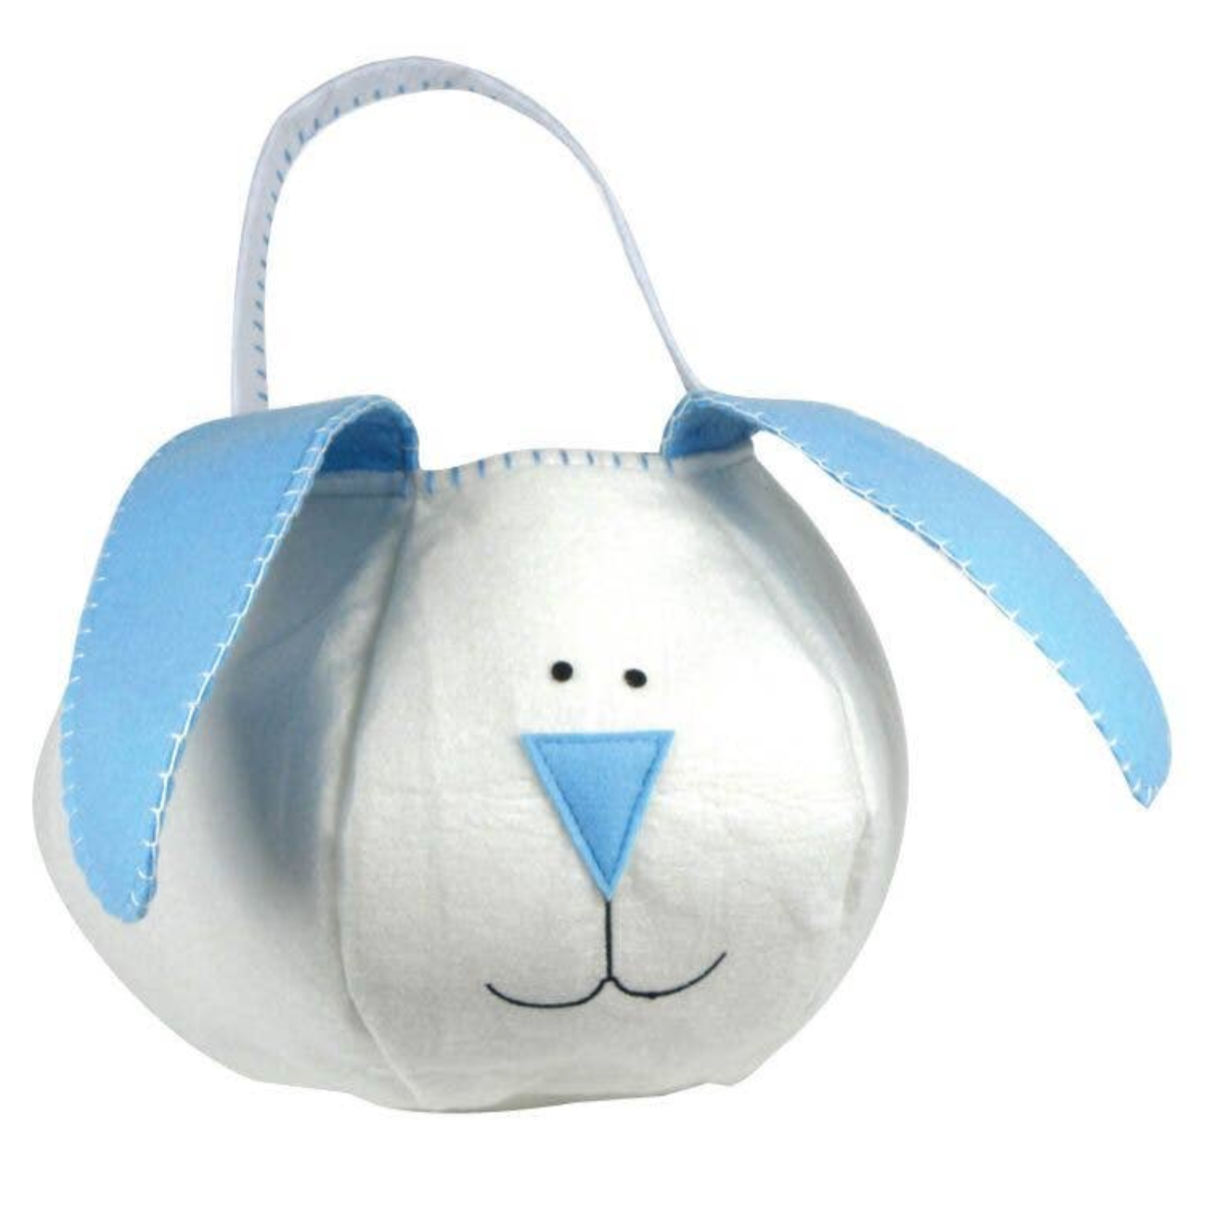 Loppy Eared Easter Bunny Basket - Blue